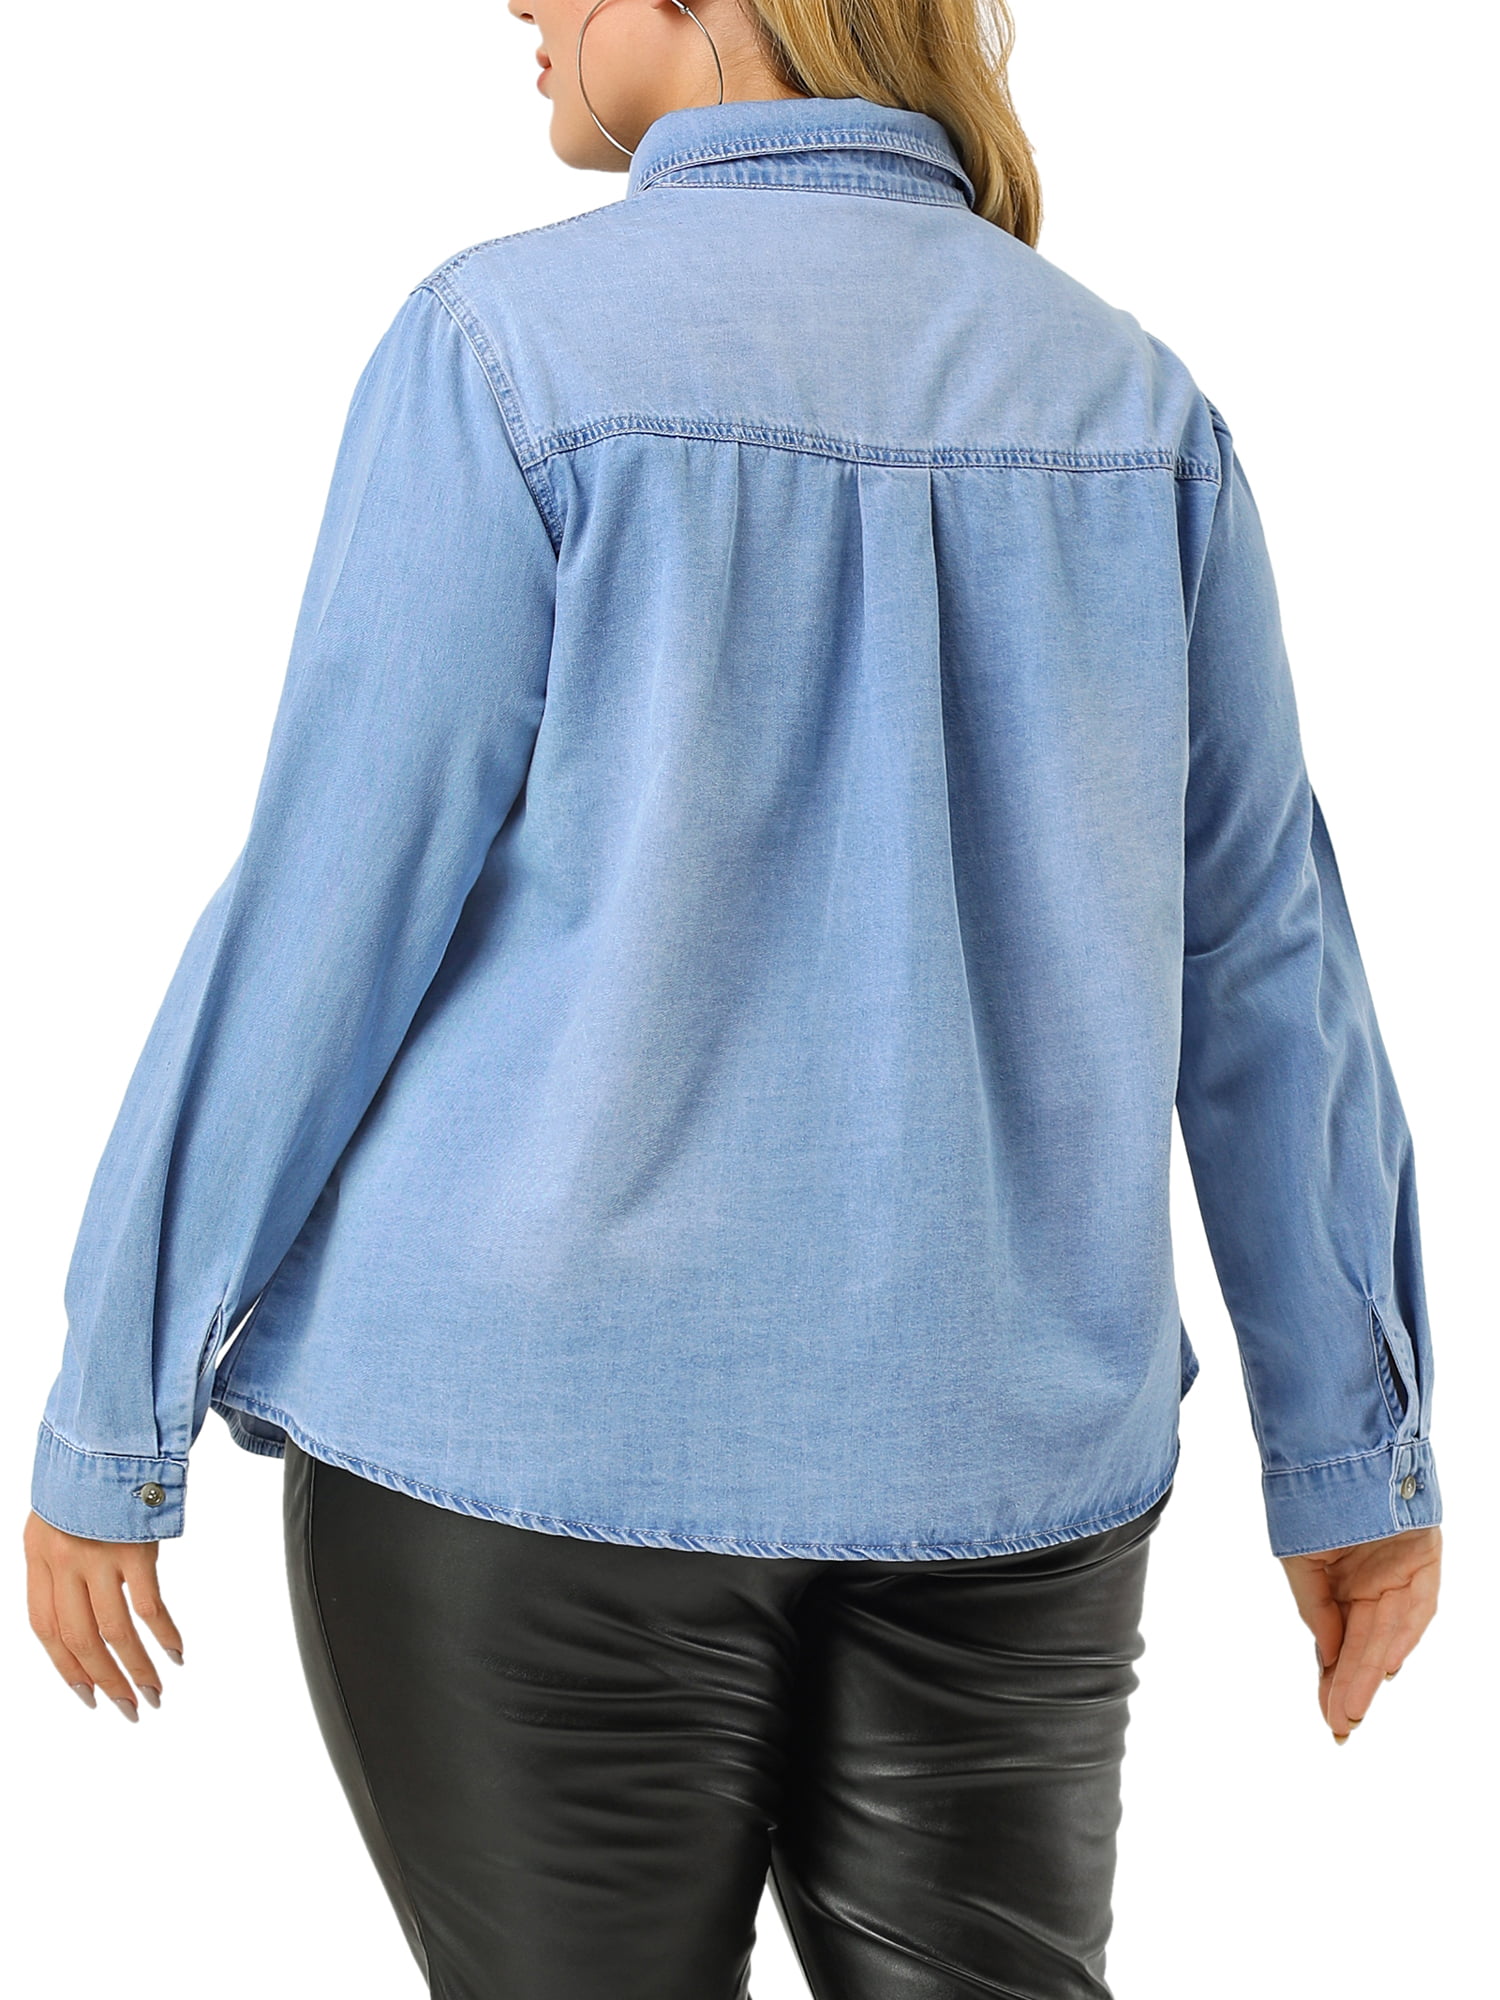 Unique Bargains Women's Plus Size Chest Pocket Long Sleeve Denim Chambray  Shirt 2X White Blue 